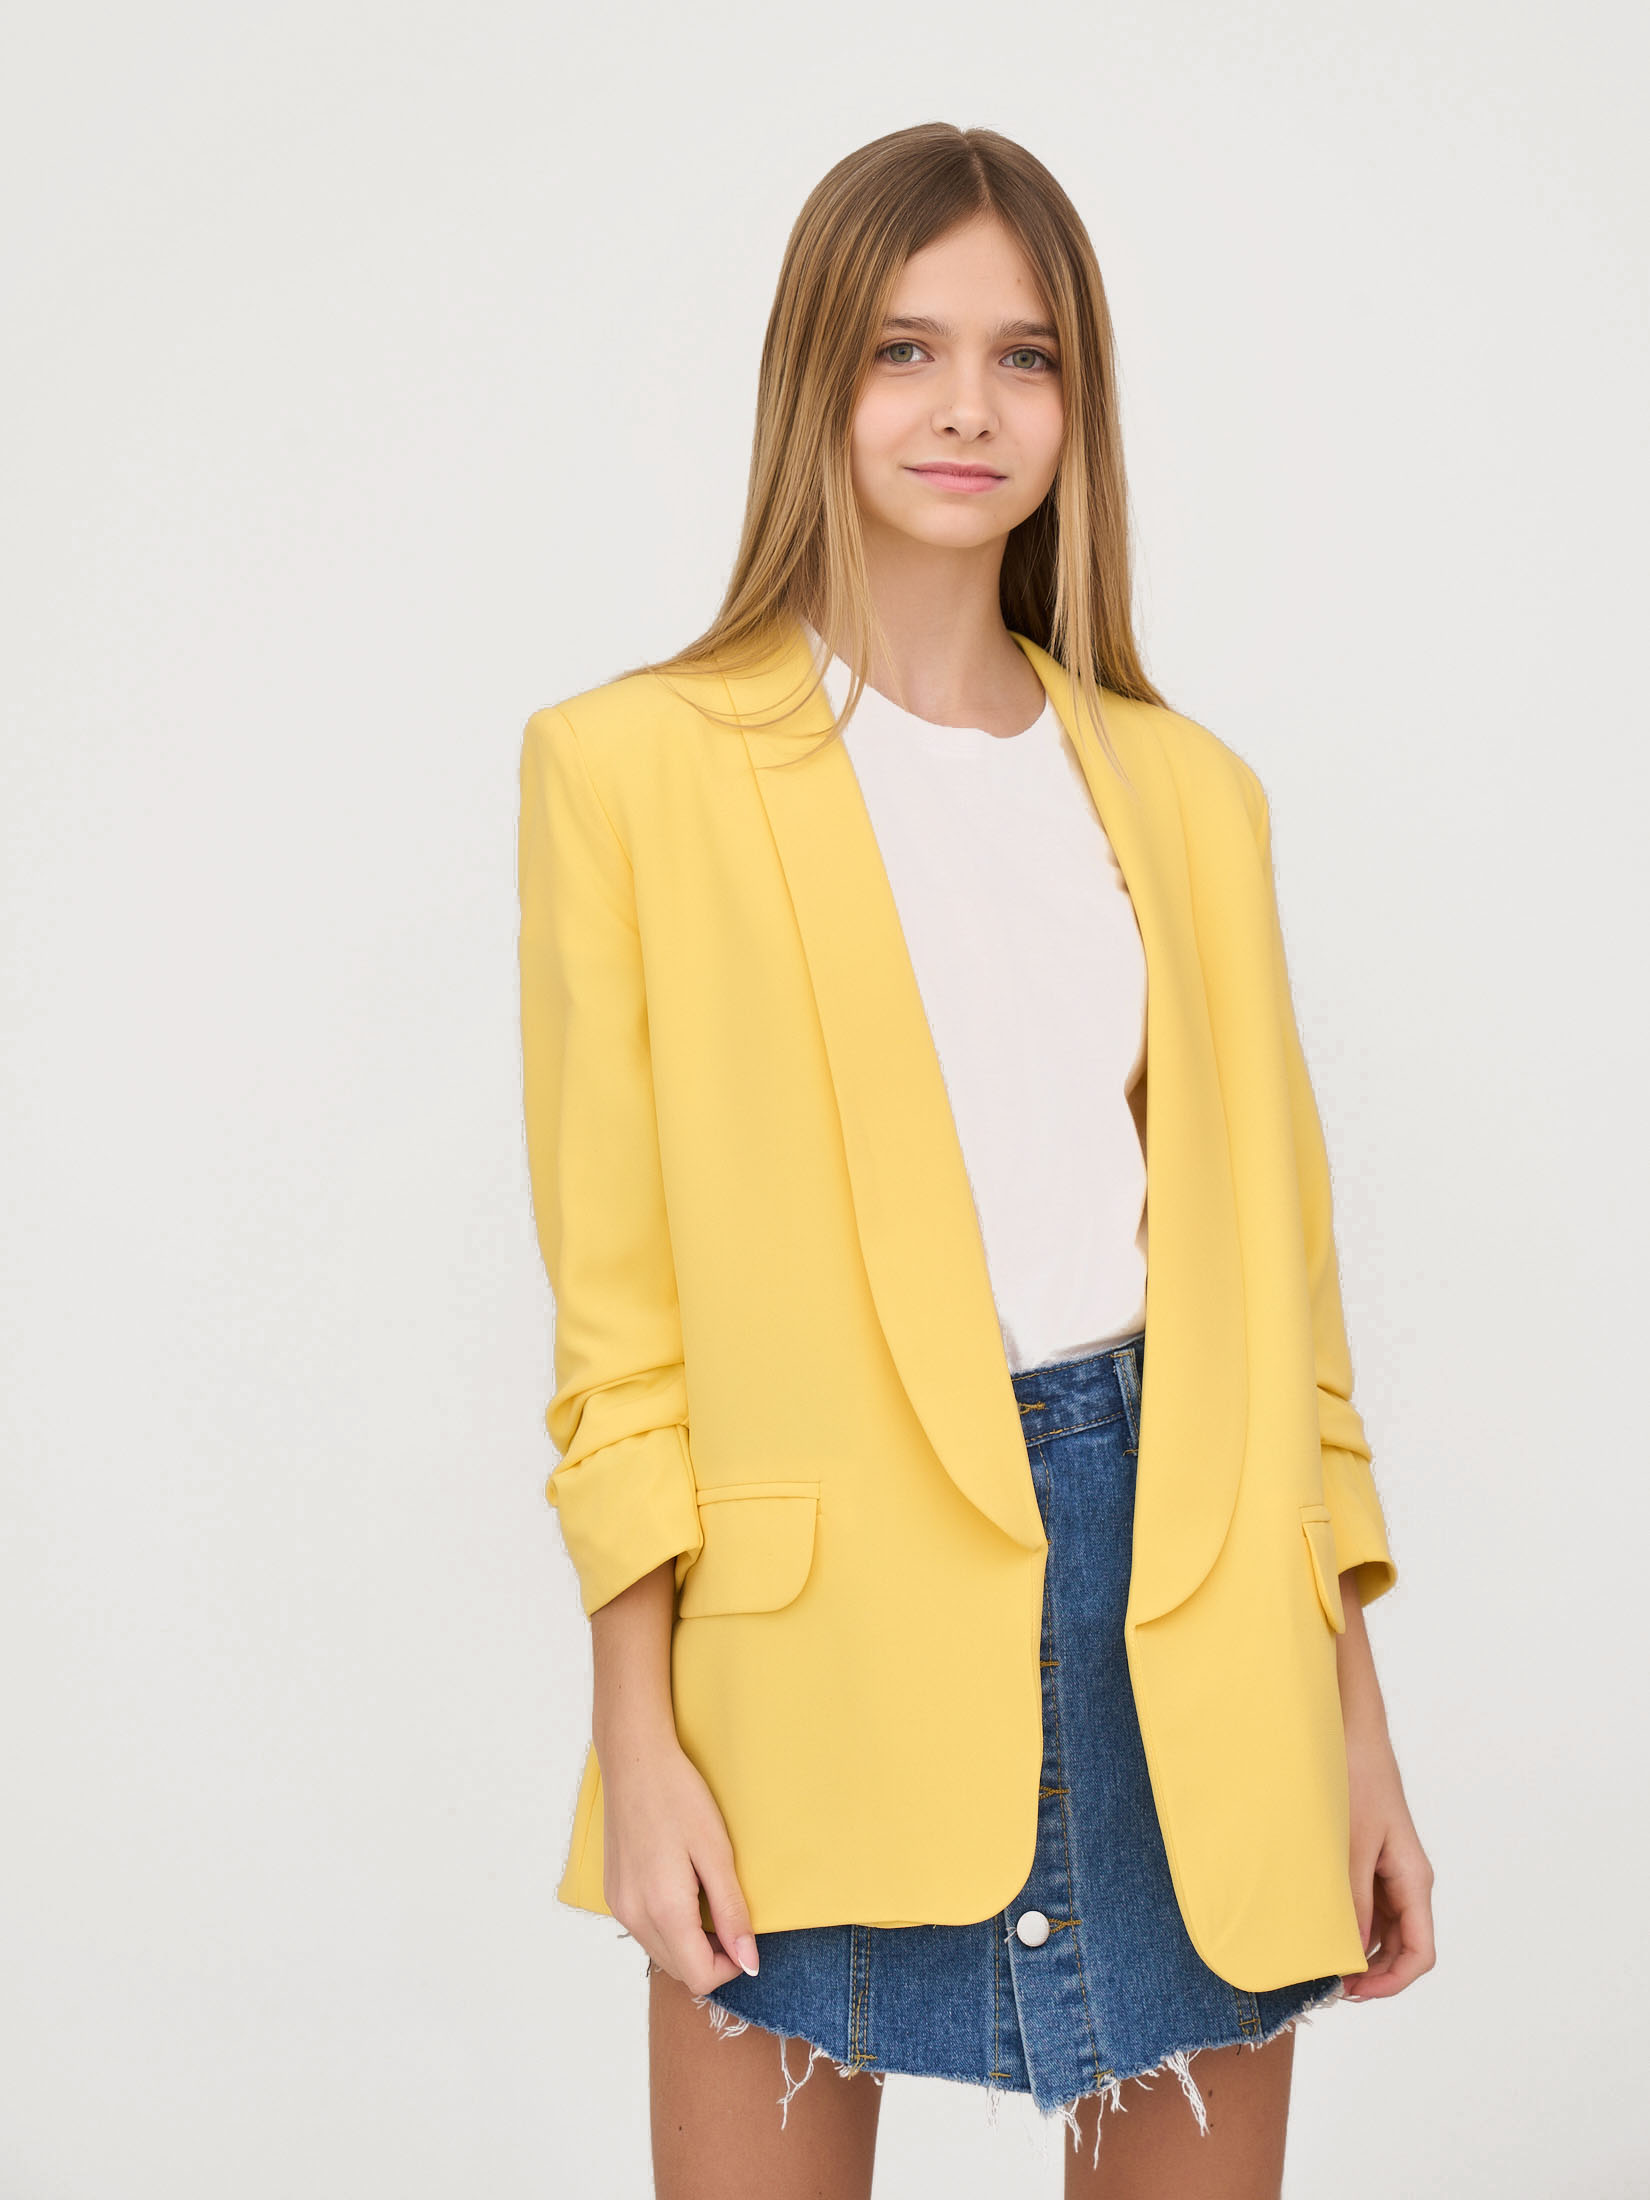 Пиджак детский для девочек Olya Stoff kOS16004 Цвет желтый размер 164